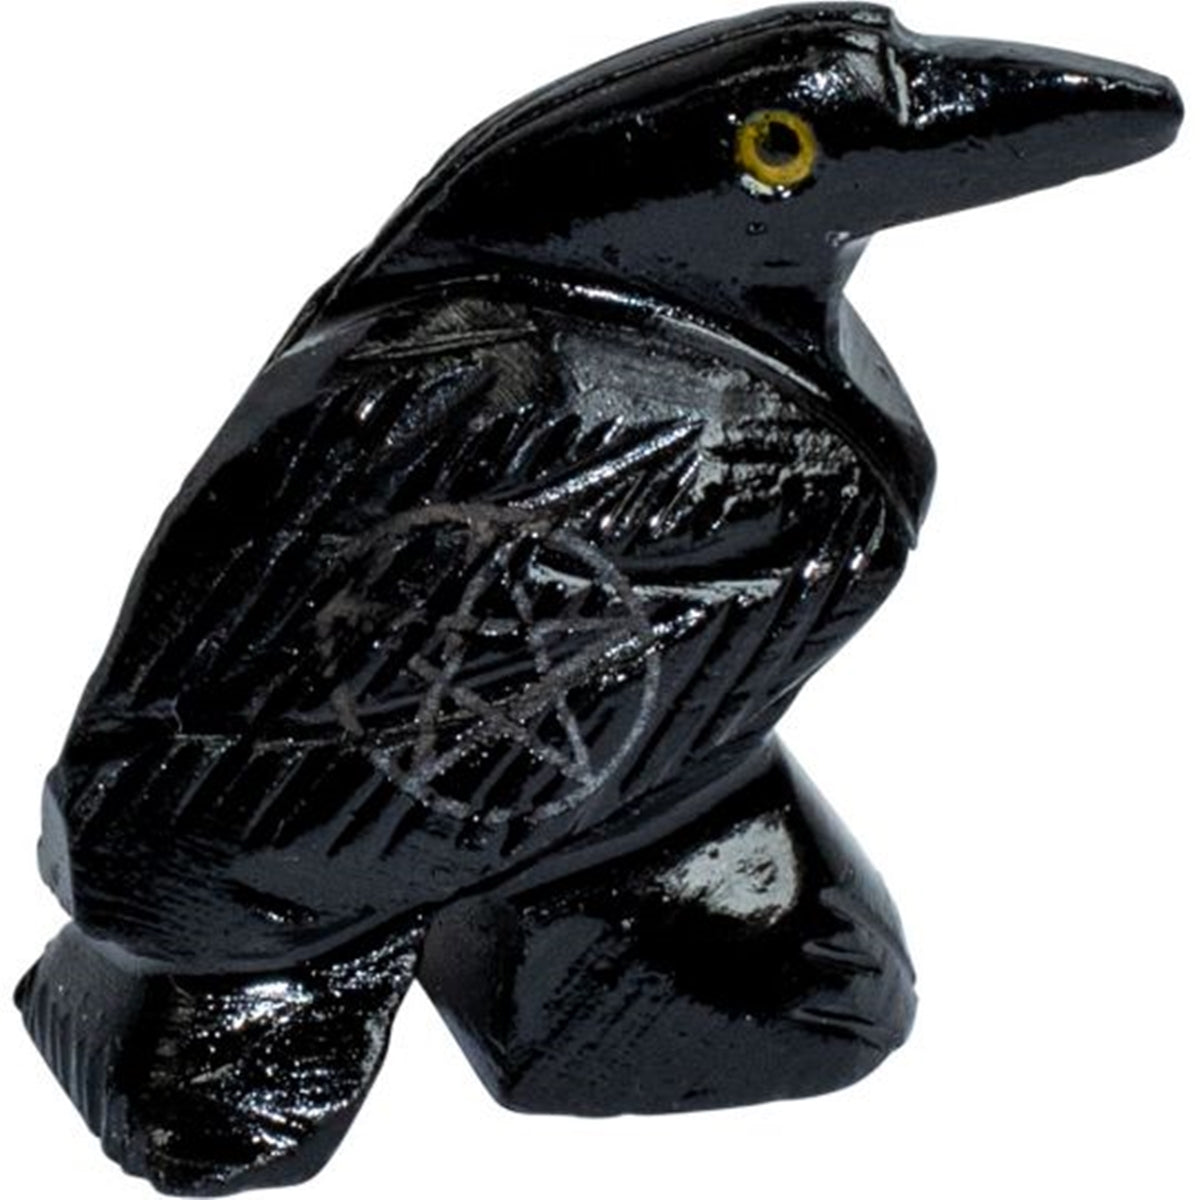 Spirit Animal - Raven Black Onyx - Pentacle